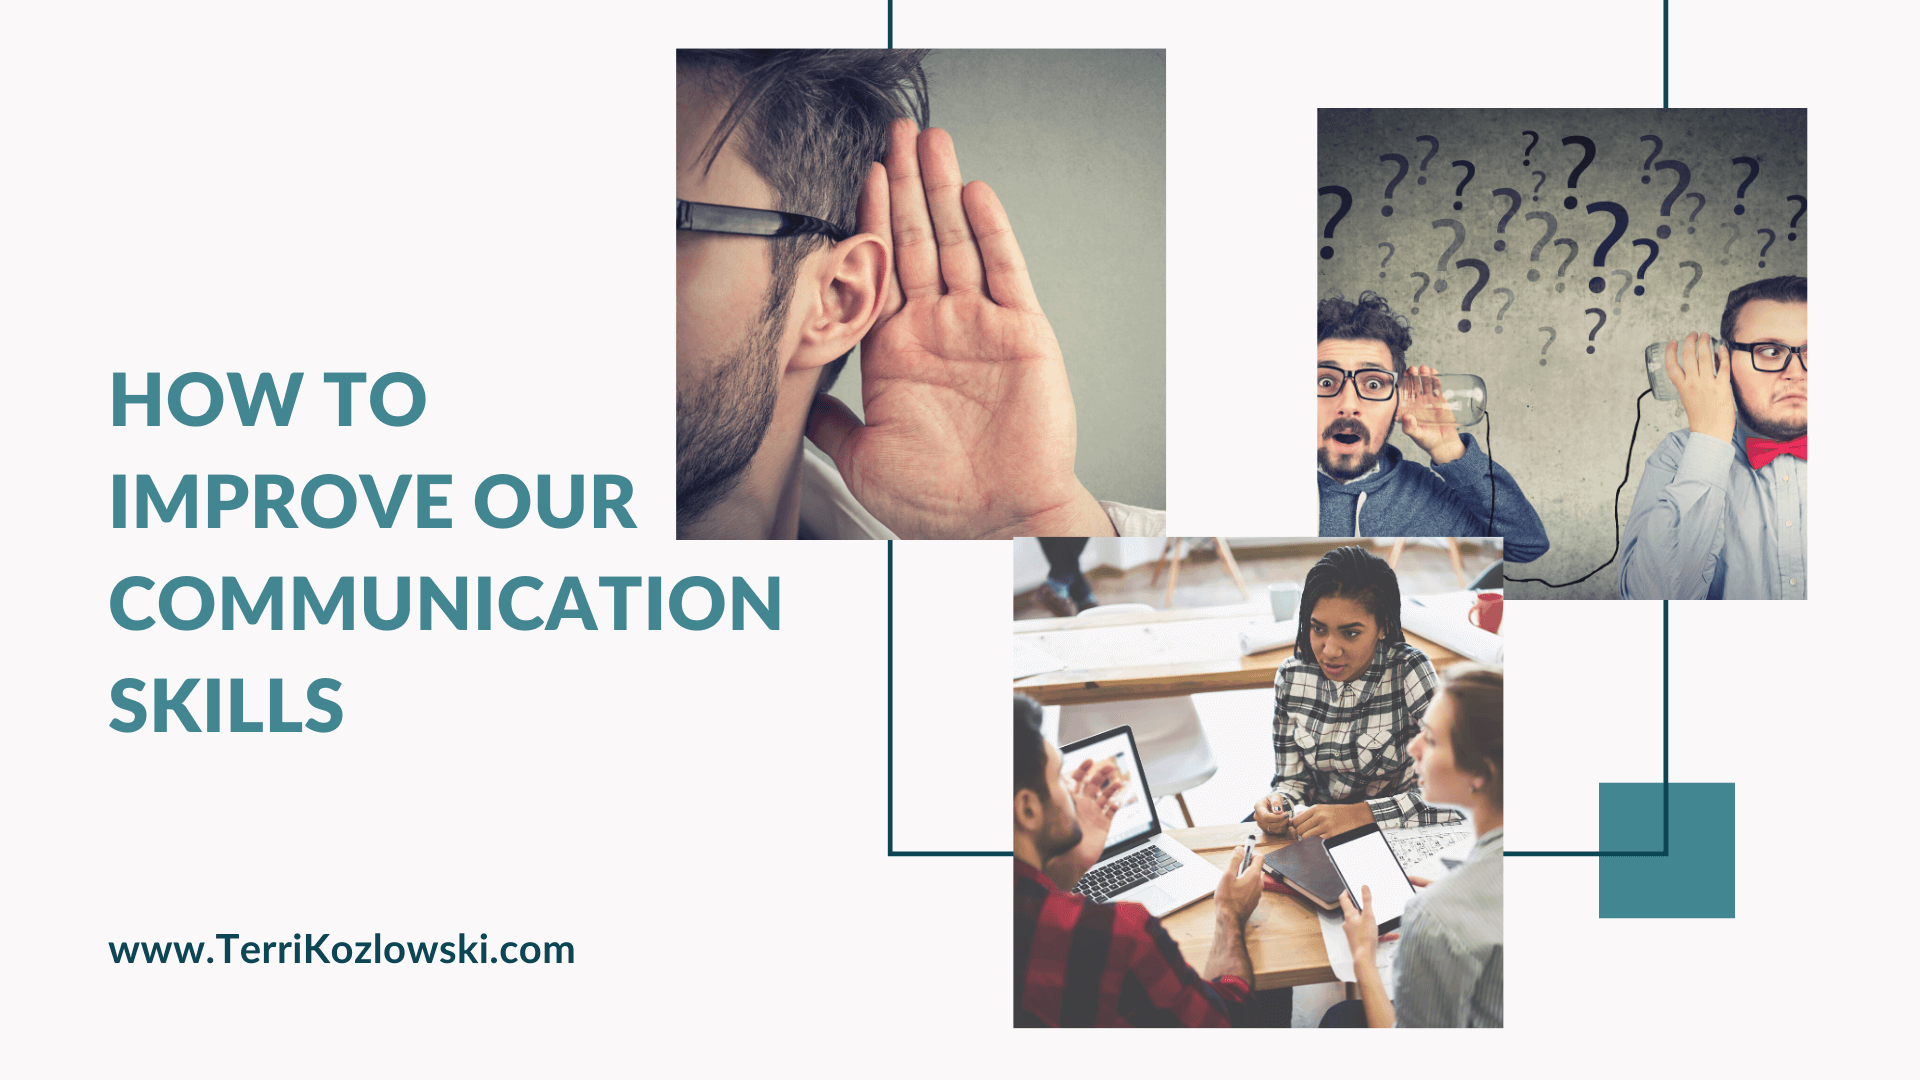 Improving Communication